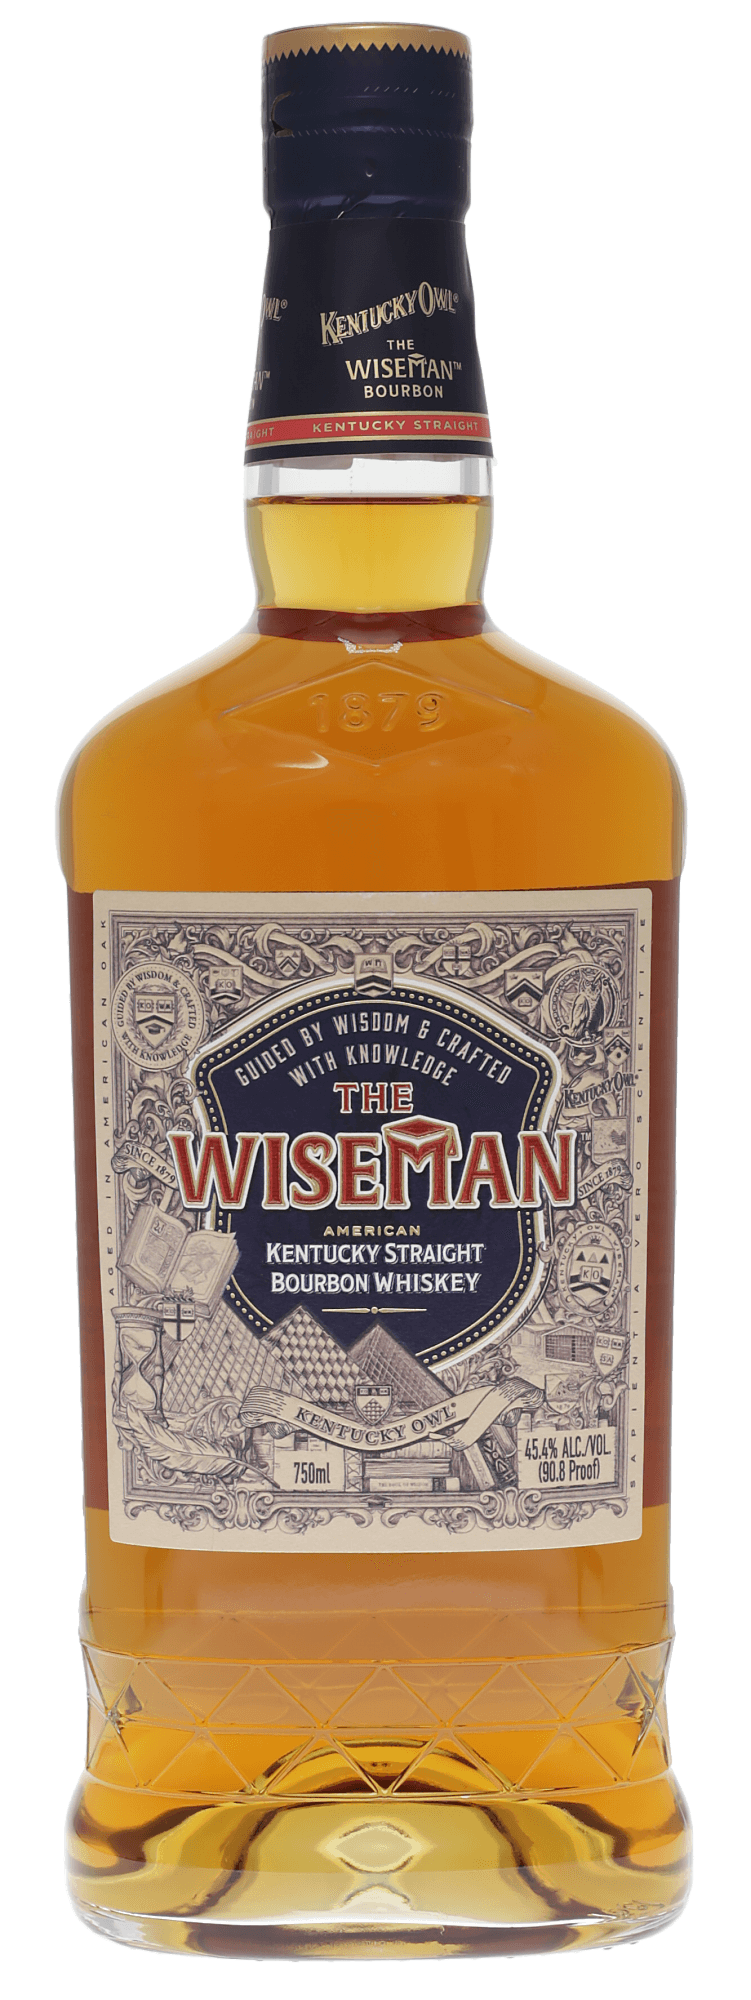 Kentucky Owl Wiseman Bourbon